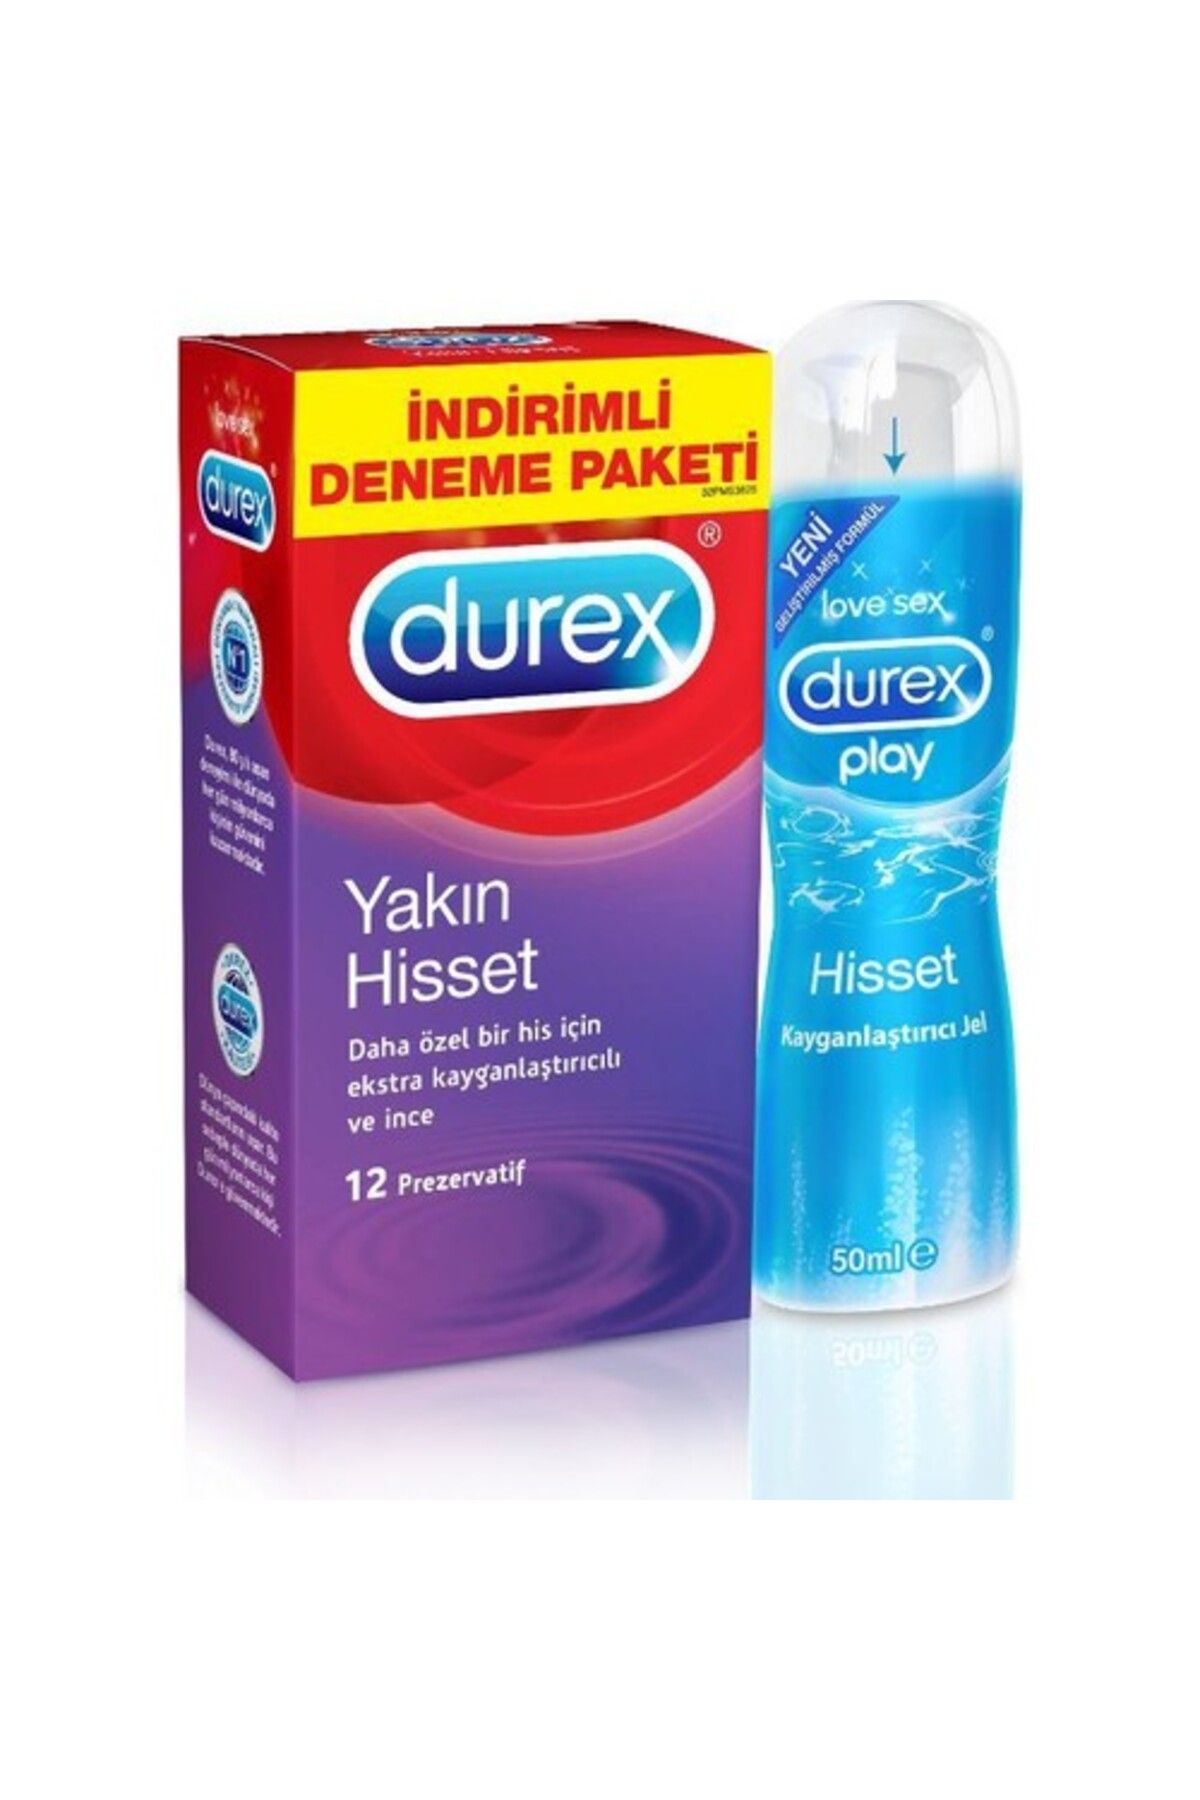 Durex Yakın Hisset 12 Prezervatif Play Kayganlaştırıcı Jel 50 ml